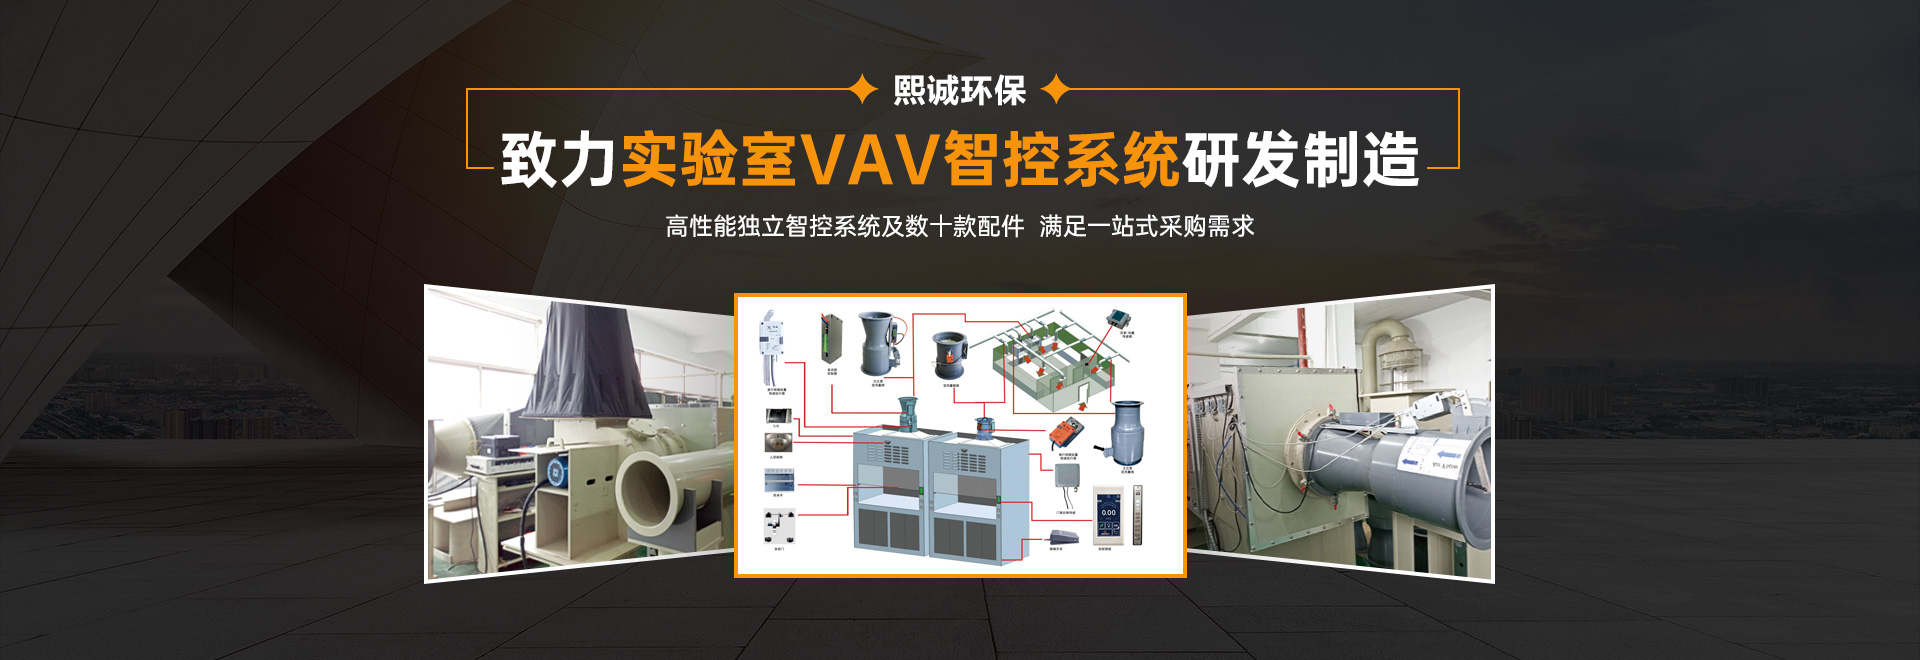 熙诚环保致力实验室VAV智控系统研发制造